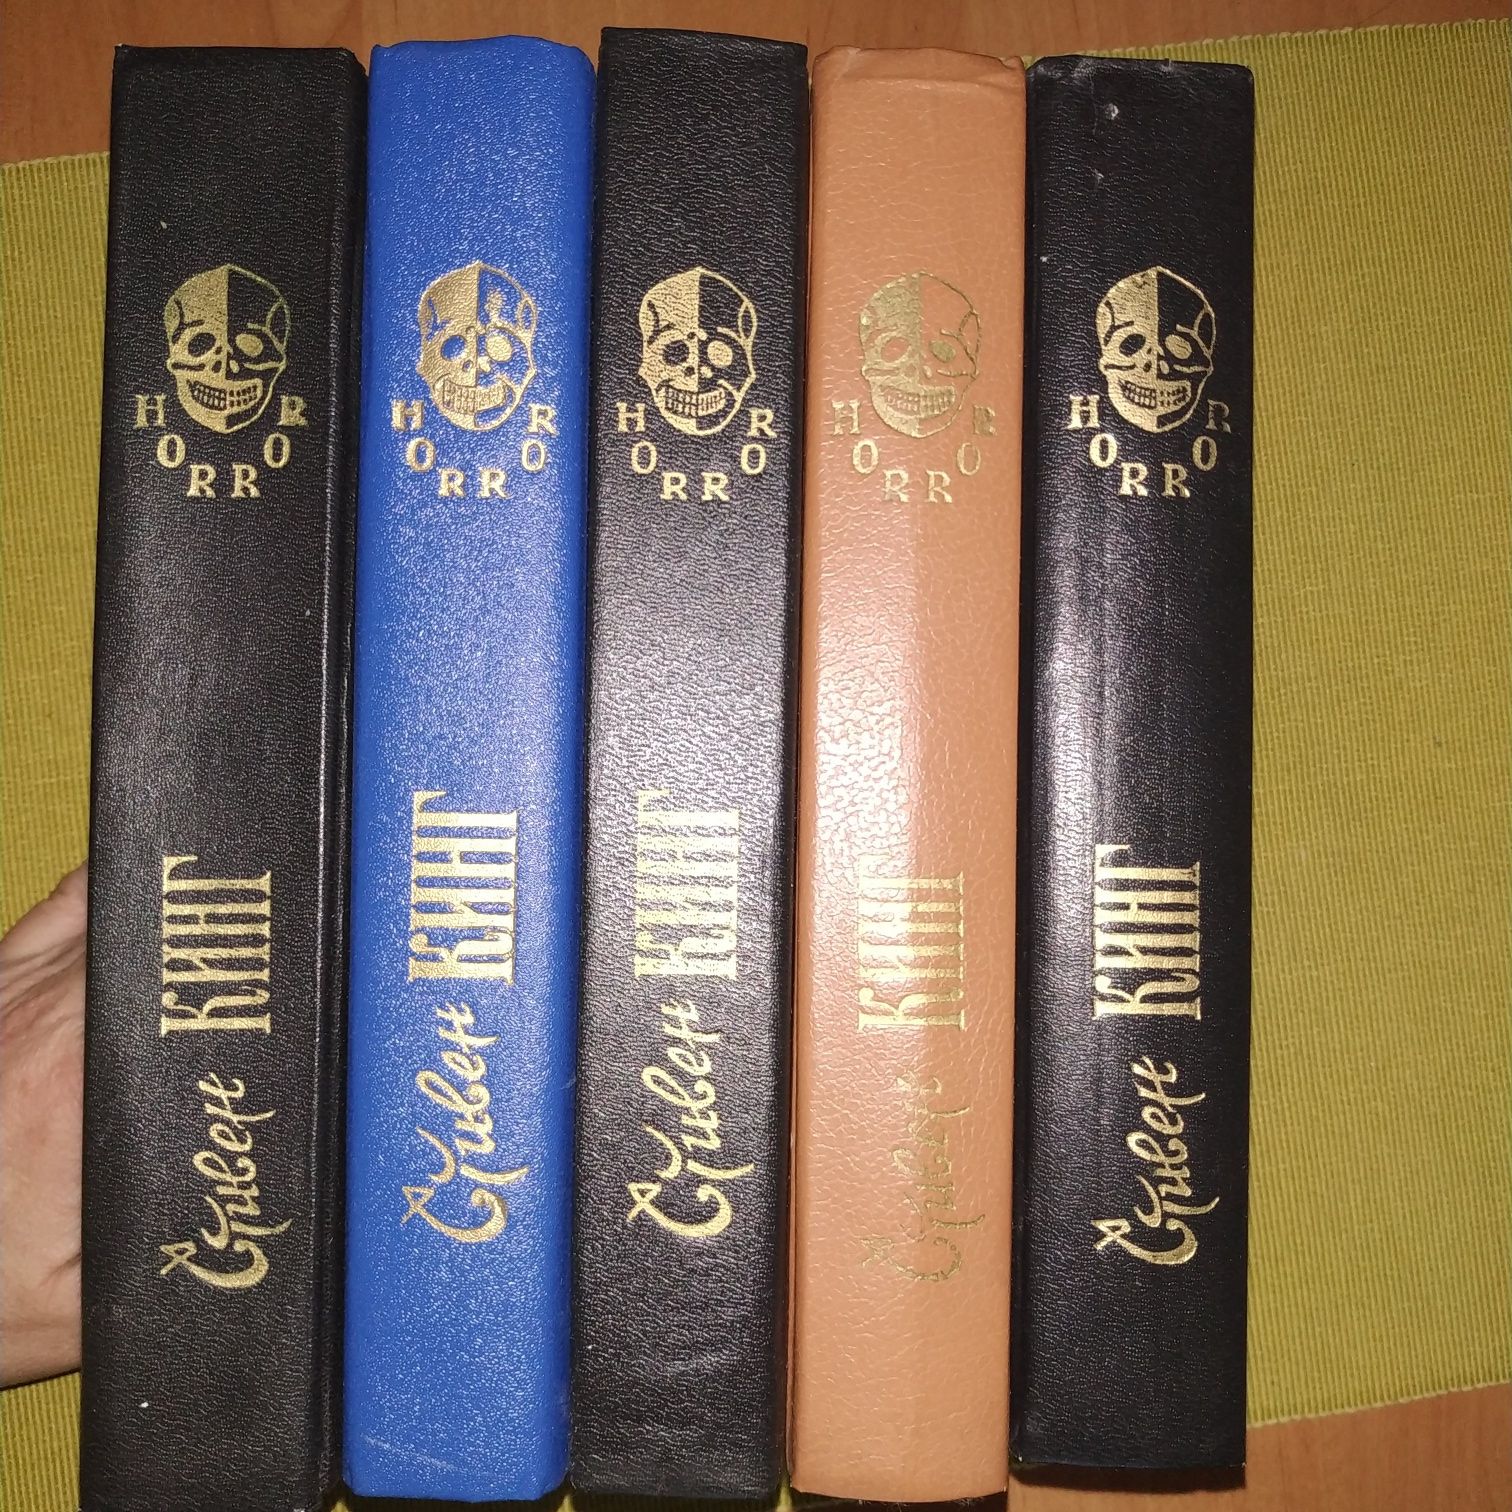 Стивен Кинг серия "HORROR" 5 томов